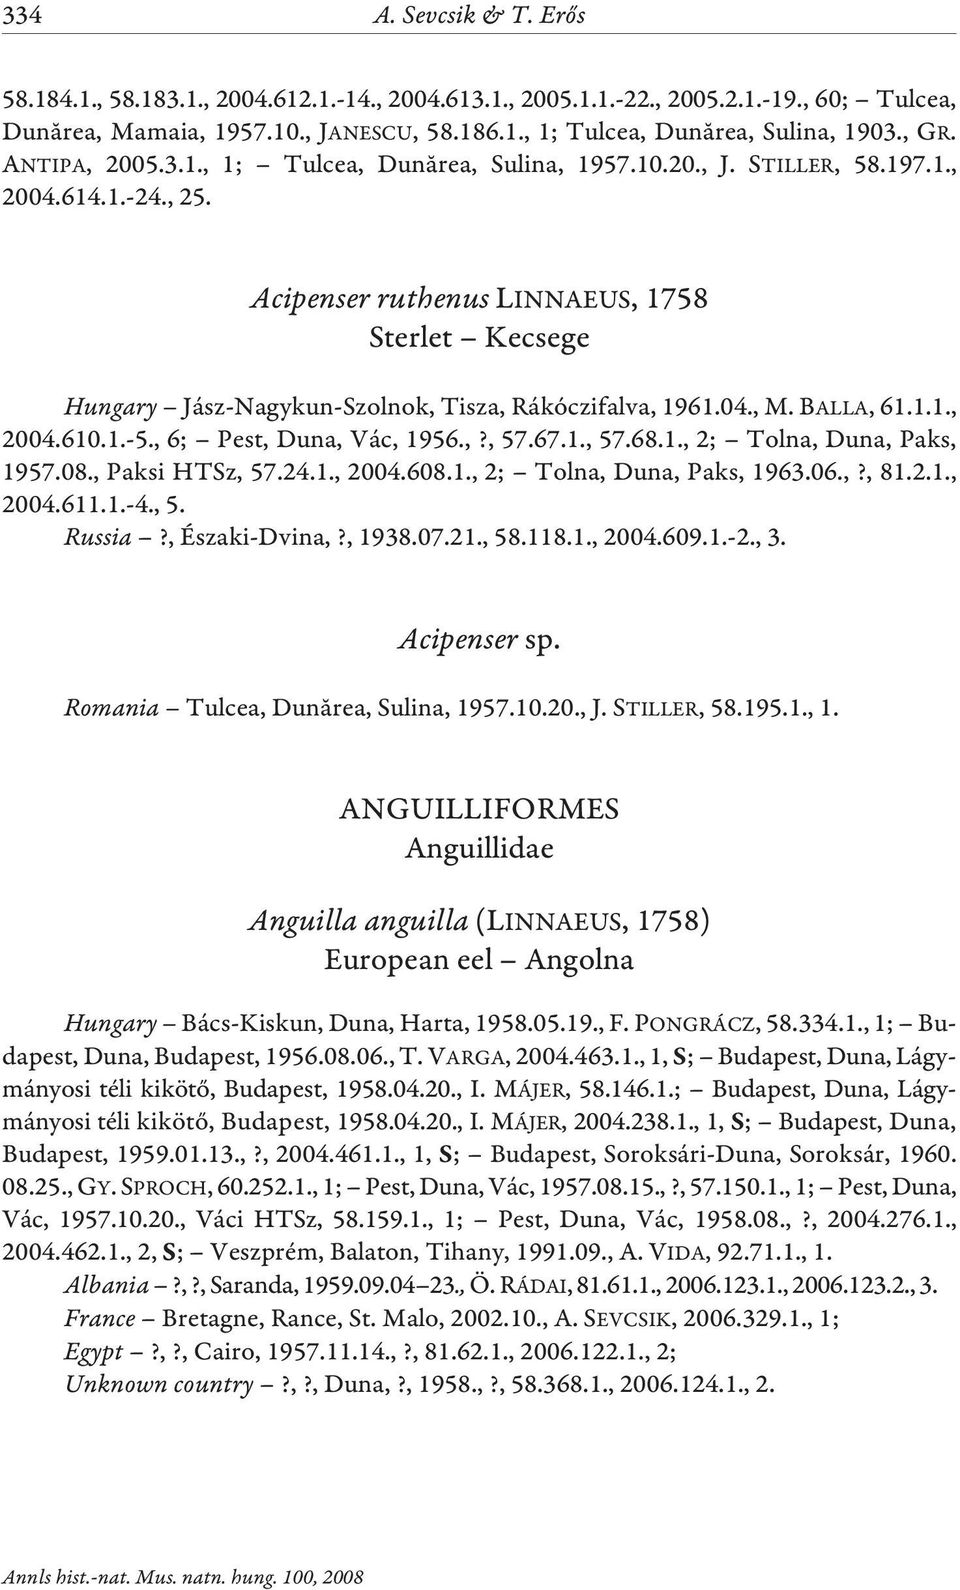 Acipenser ruthenus LINNAEUS, 1758 Sterlet Kecsege Hungary Jász-Nagykun-Szolnok, Tisza, Rákóczifalva, 1961.04., M. BALLA, 61.1.1., 2004.610.1.-5., 6; Pest, Duna, Vác, 1956.,?, 57.67.1., 57.68.1., 2; Tolna, Duna, Paks, 1957.